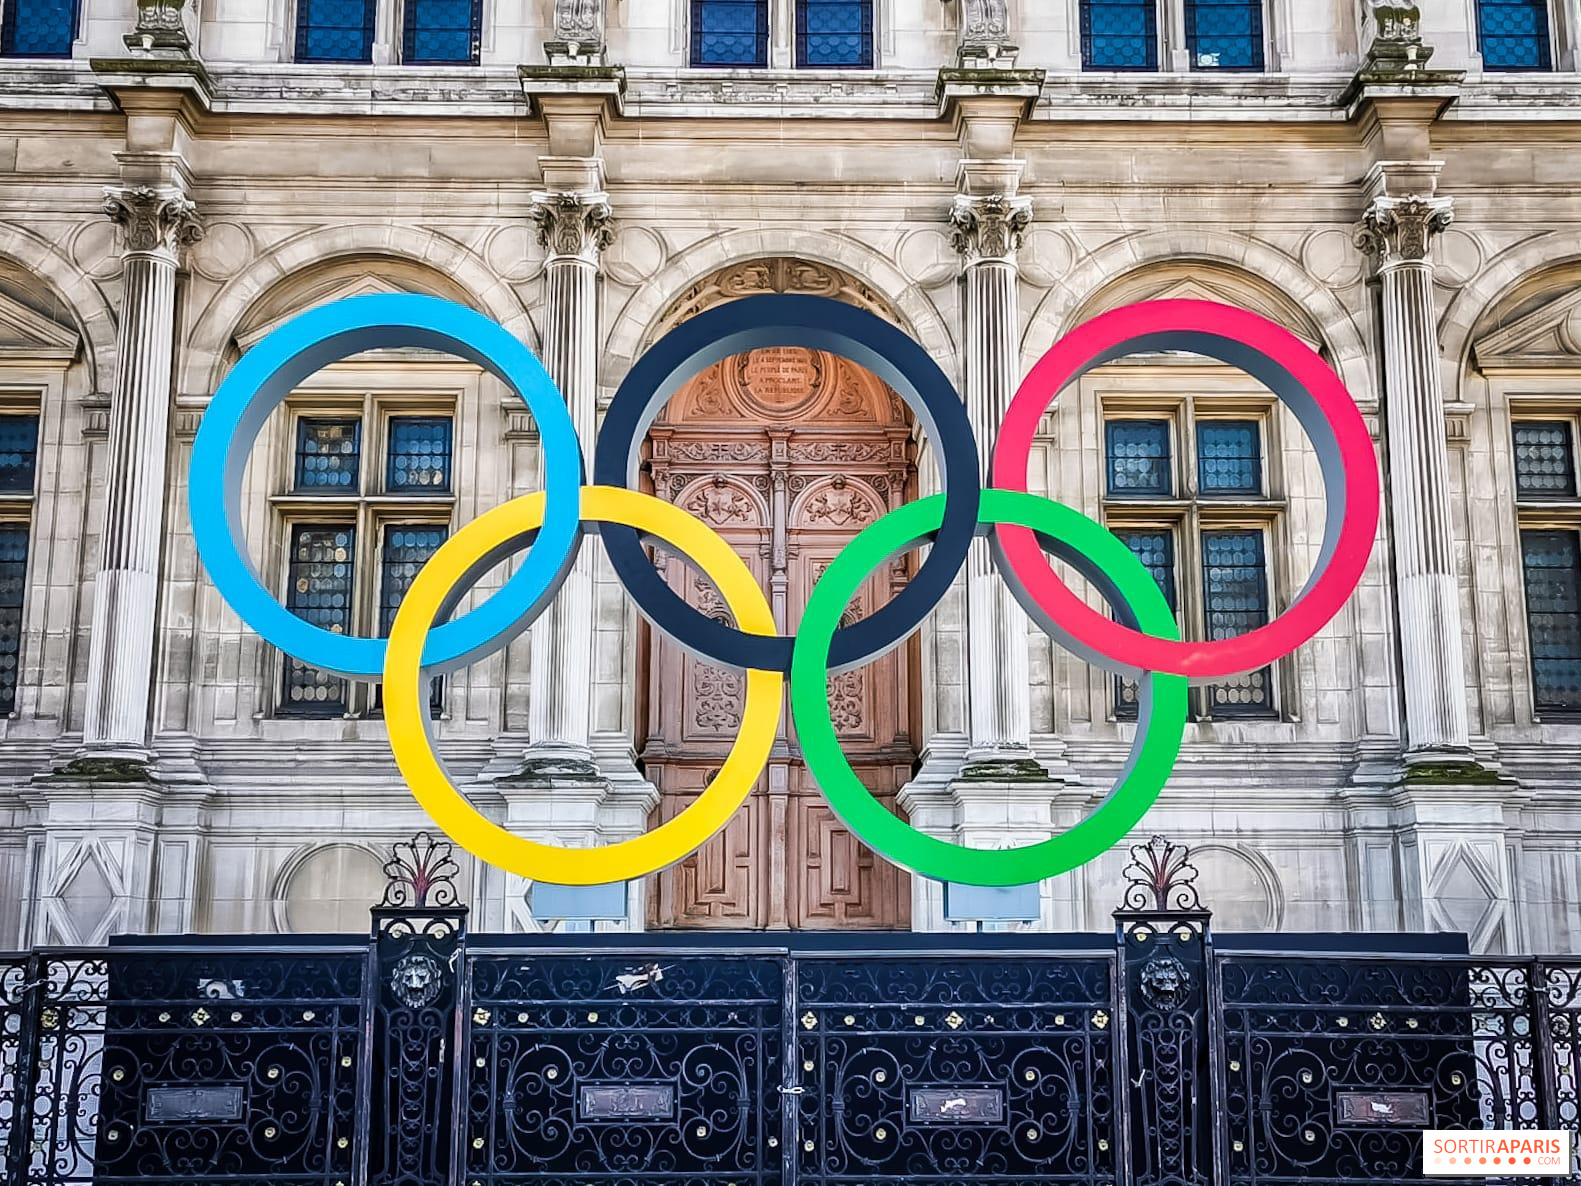 Jeux de Paris 2024 : pourquoi le groupe LVMH devient partenaire premium des  JO - Le Parisien